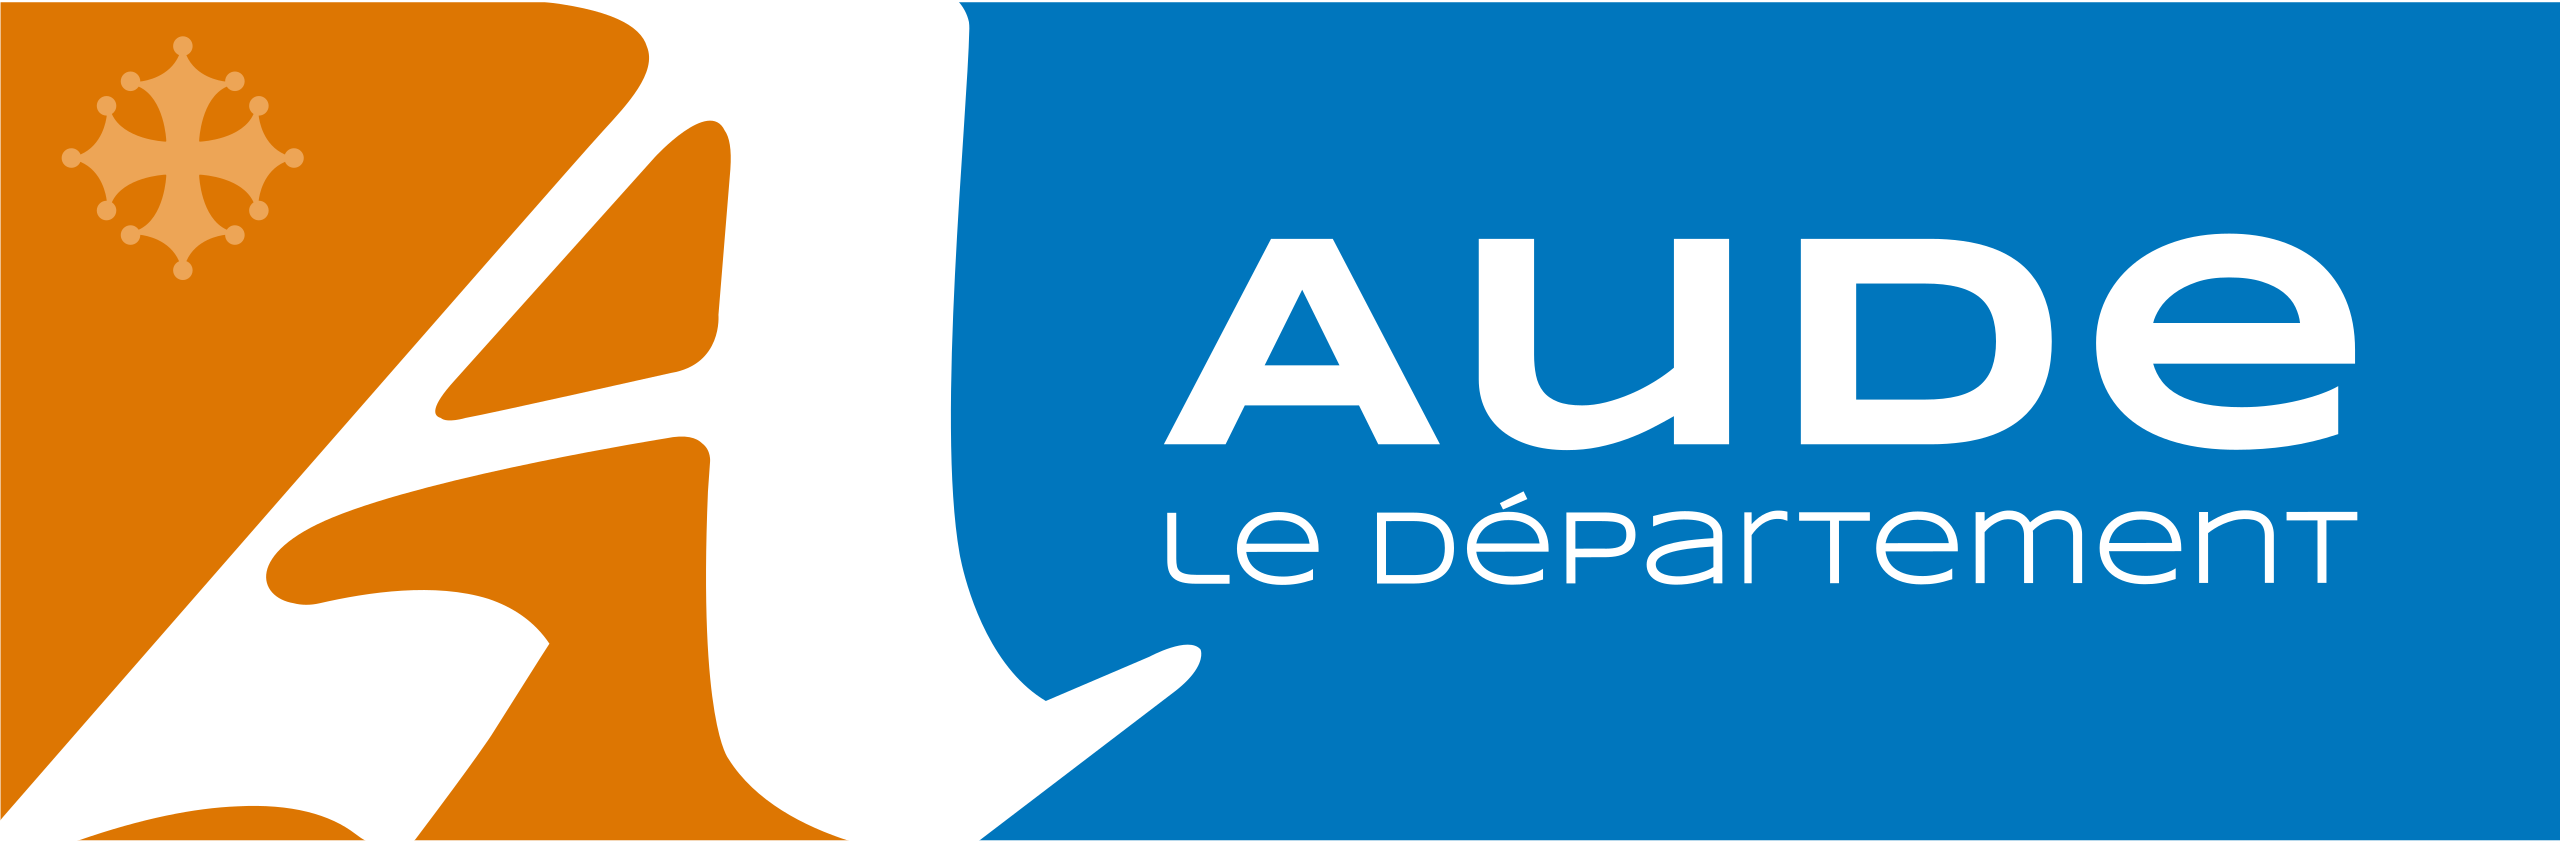 vacances scolaires département Aude